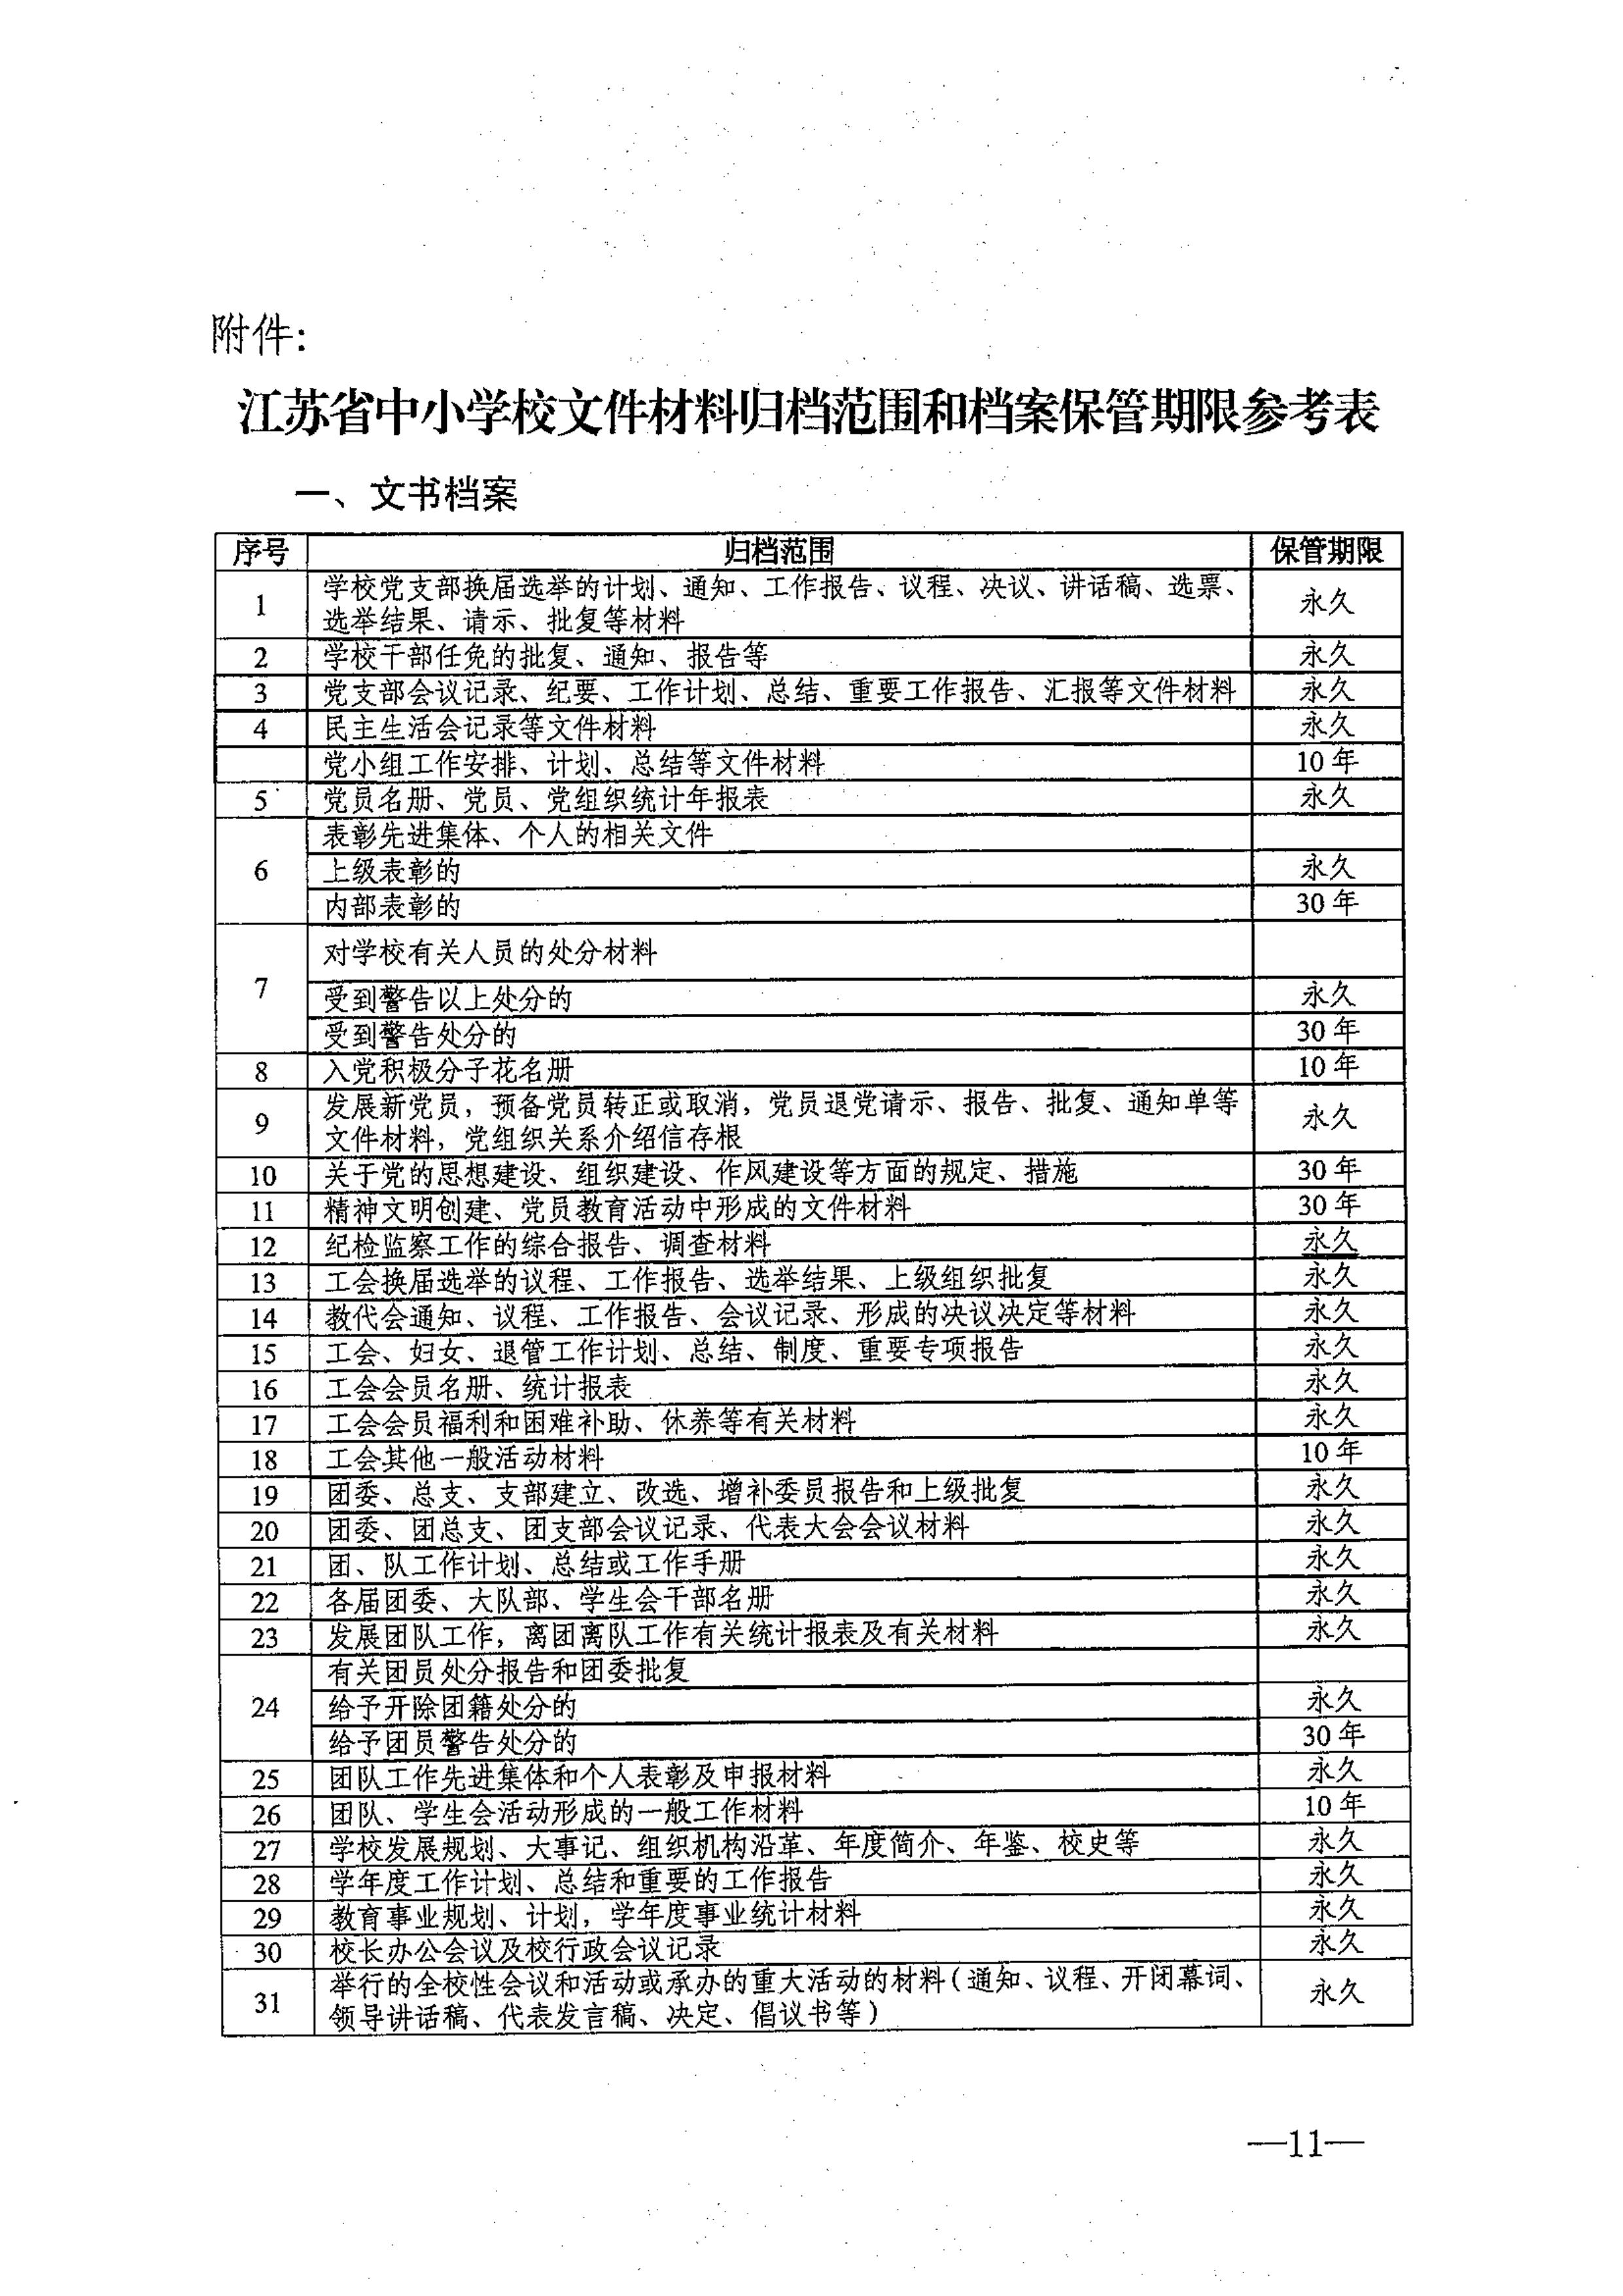 省教育厅、省档案局关于印发《江苏省中小学校档案管理暂行办法》的通知-图片-0011